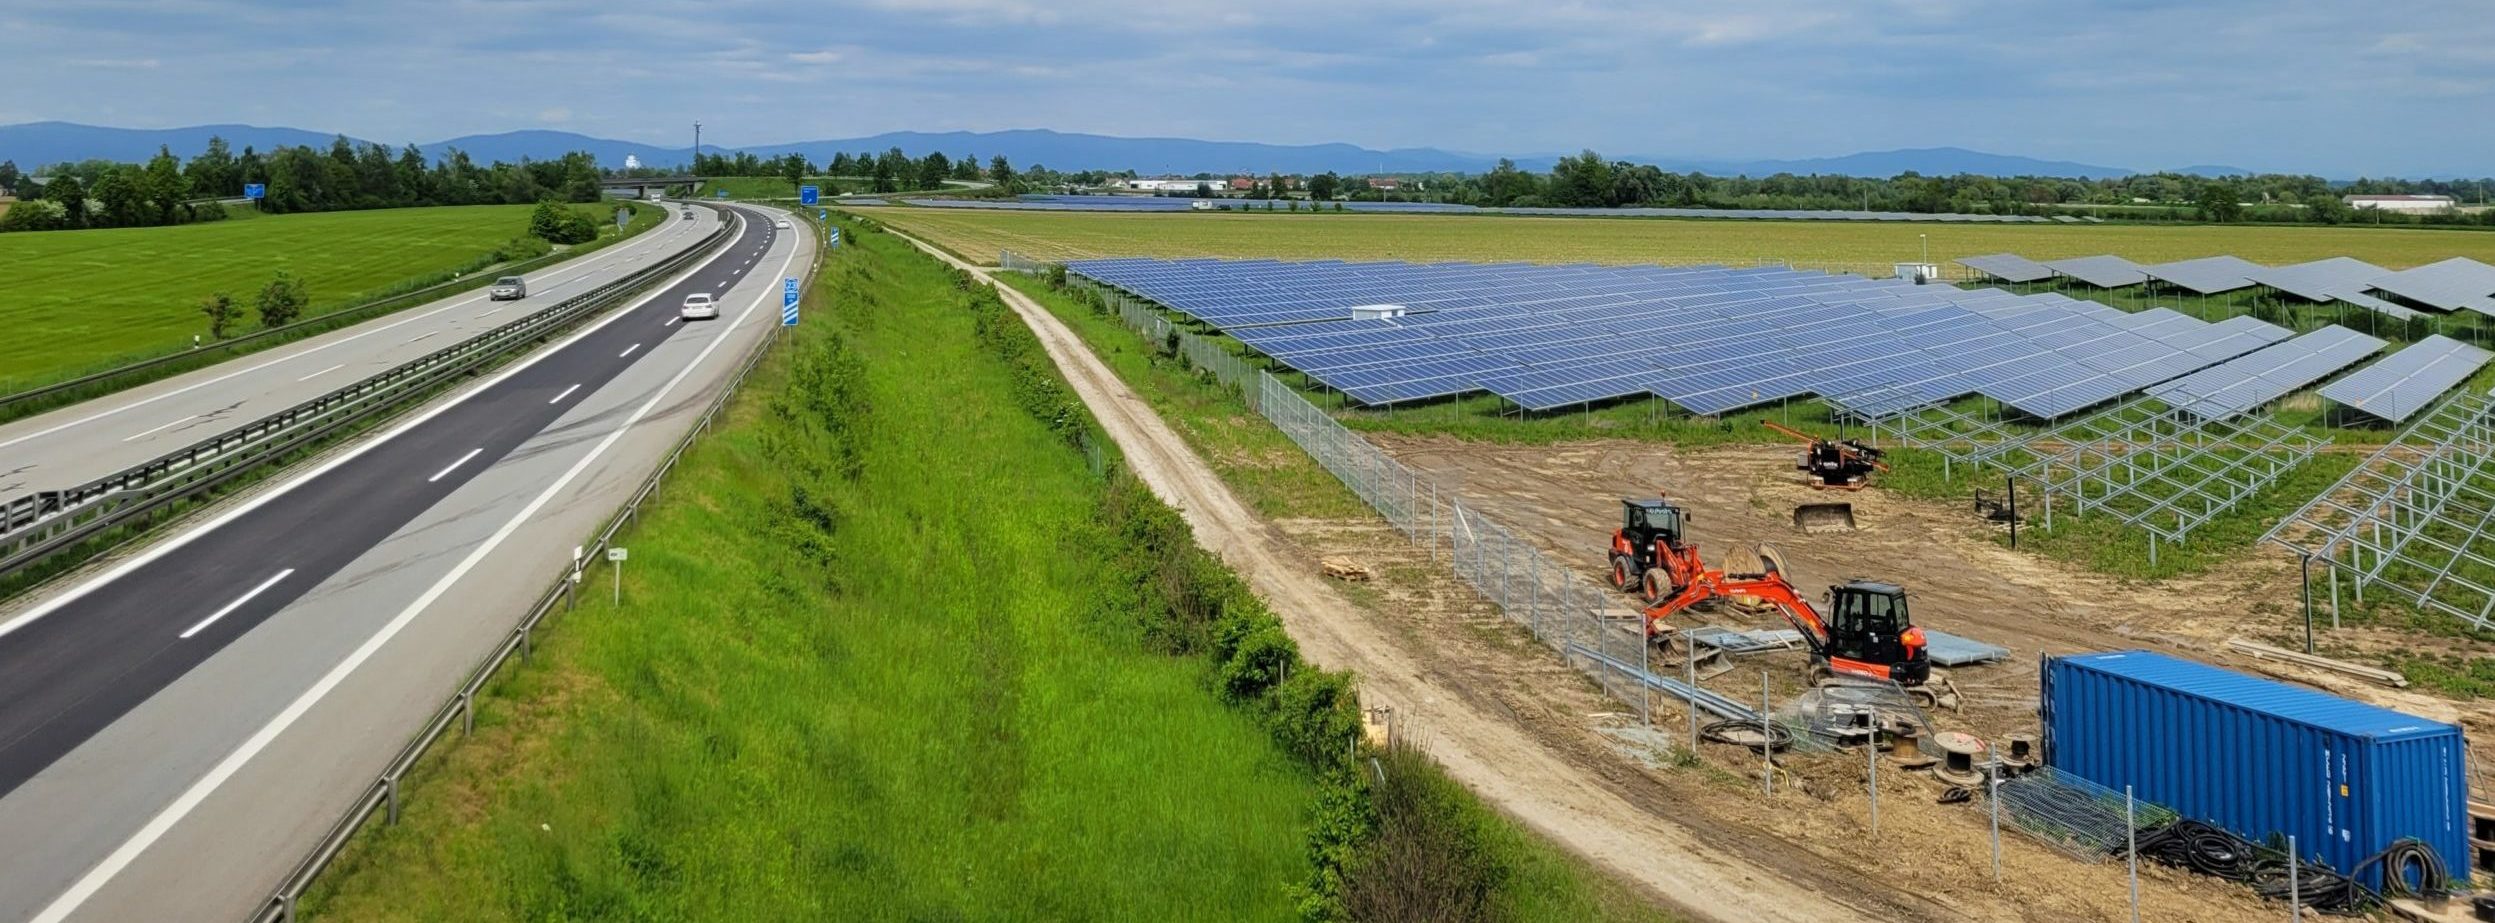 Zur baurechtlichen Privilegierung von Freiflächen- und Agri-Photovoltaikanlagen